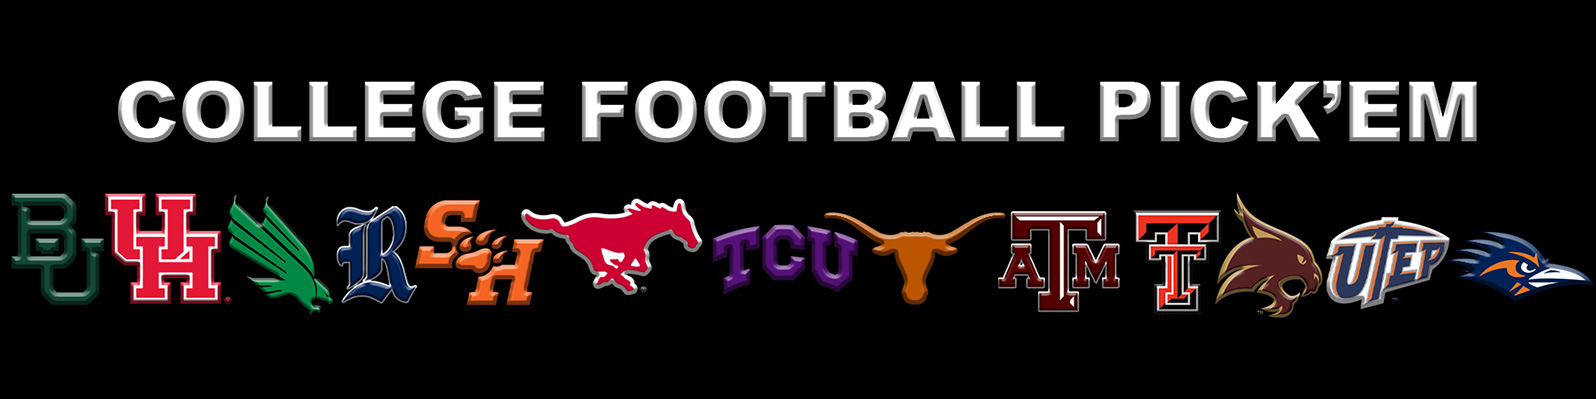 Texas College Football Pick 'Em Contest